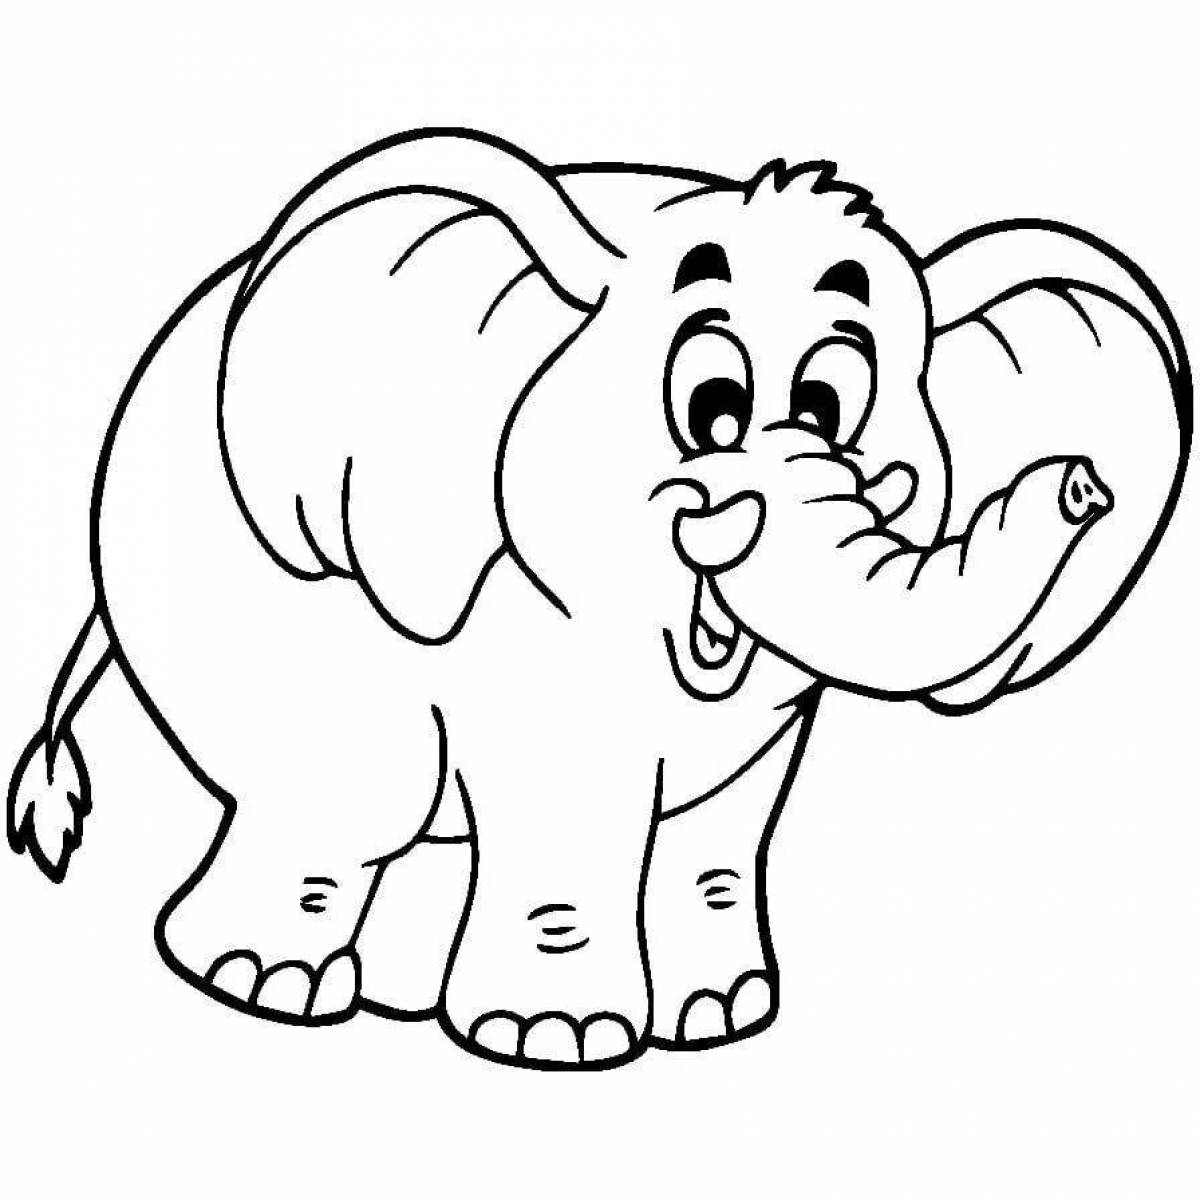 Симпатичная раскраска слона для детей